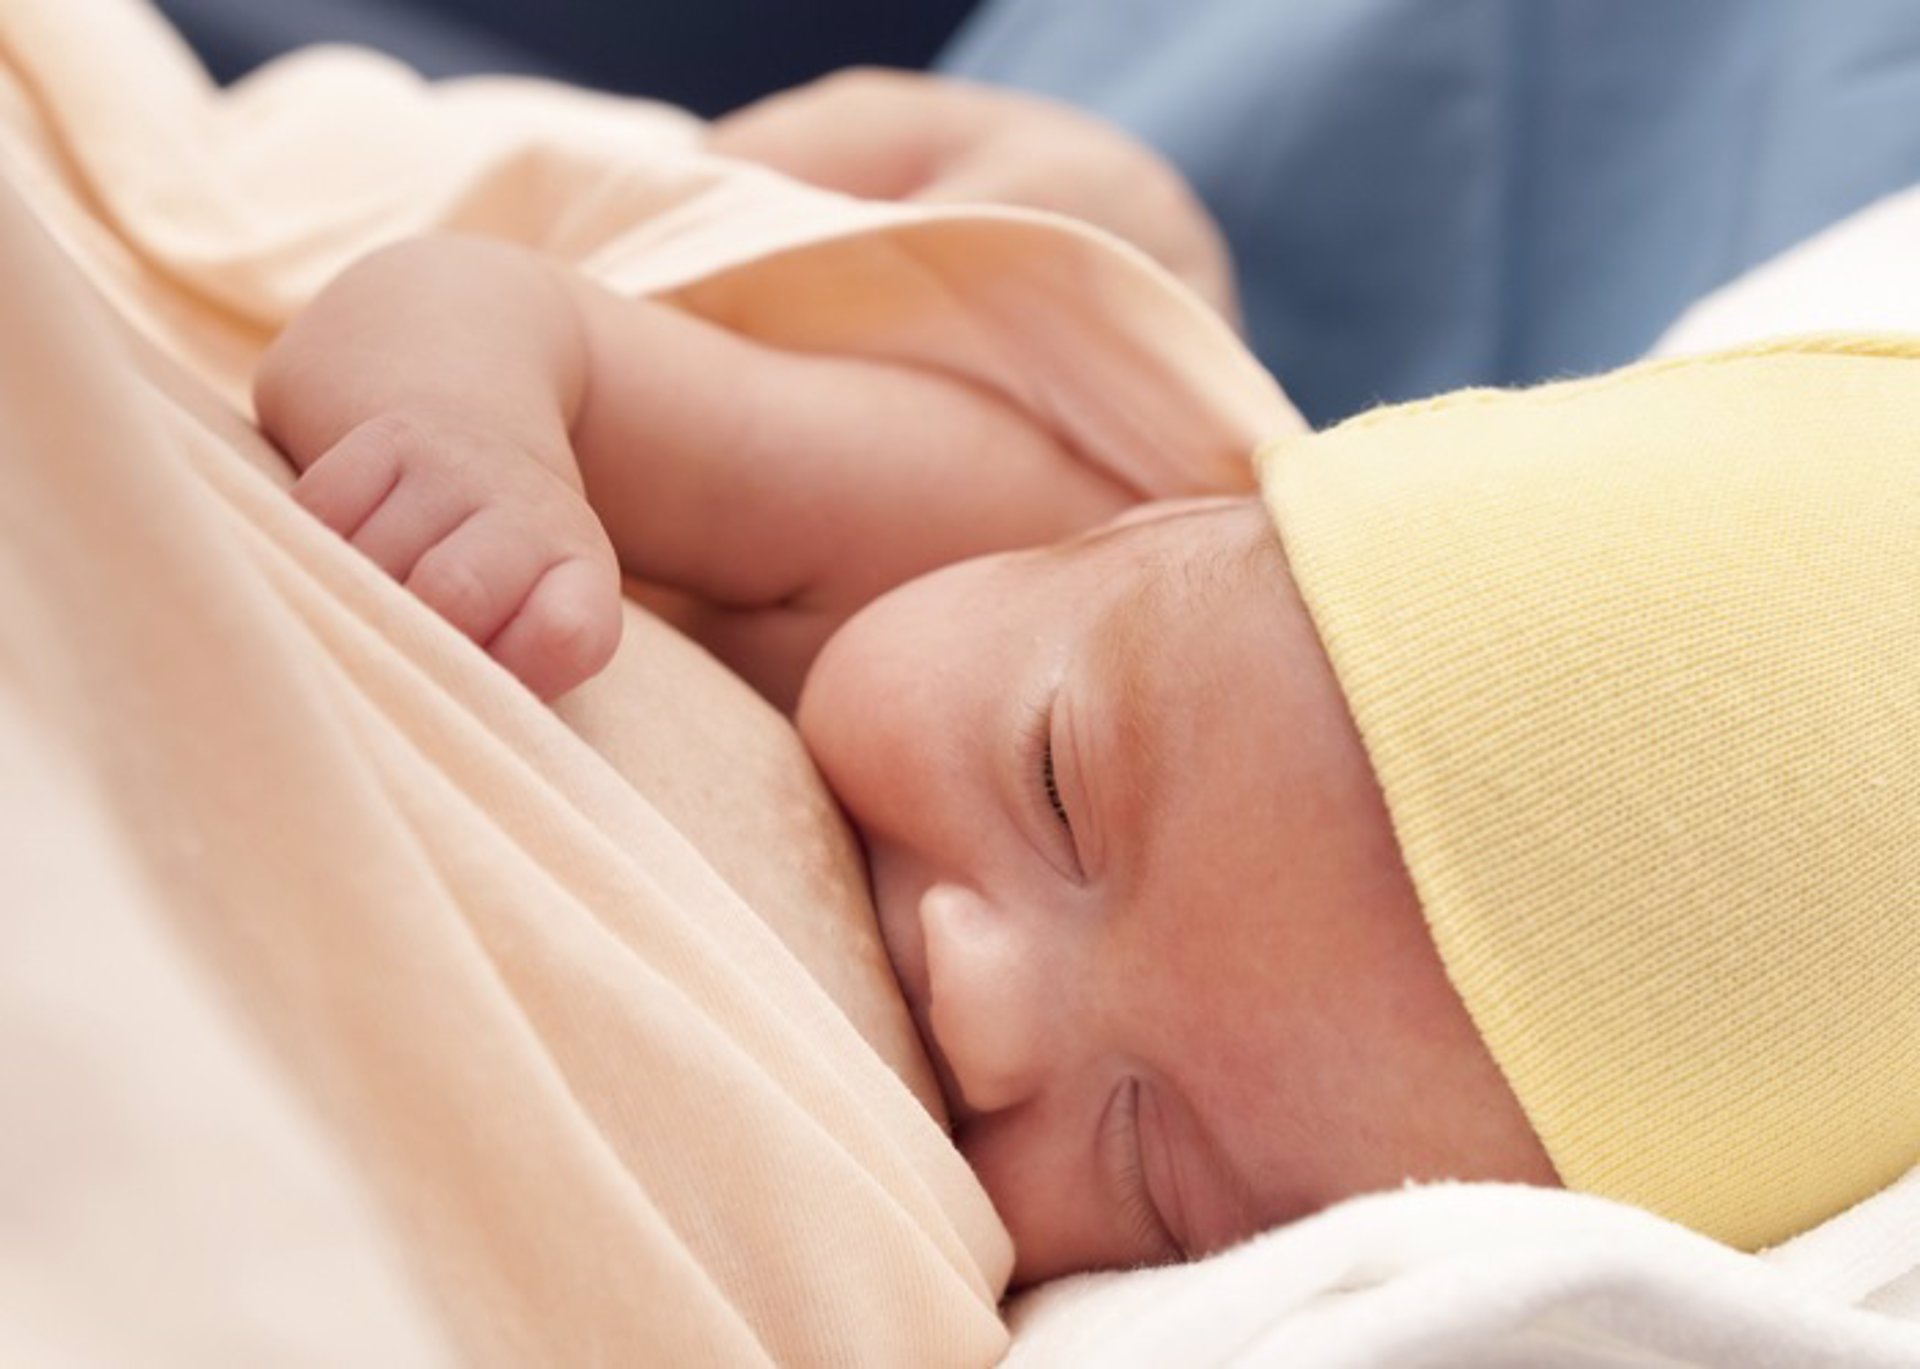 Un nuevo estudio sugiere que la lactancia materna puede ayudar a prevenir el deterioro cognitivo